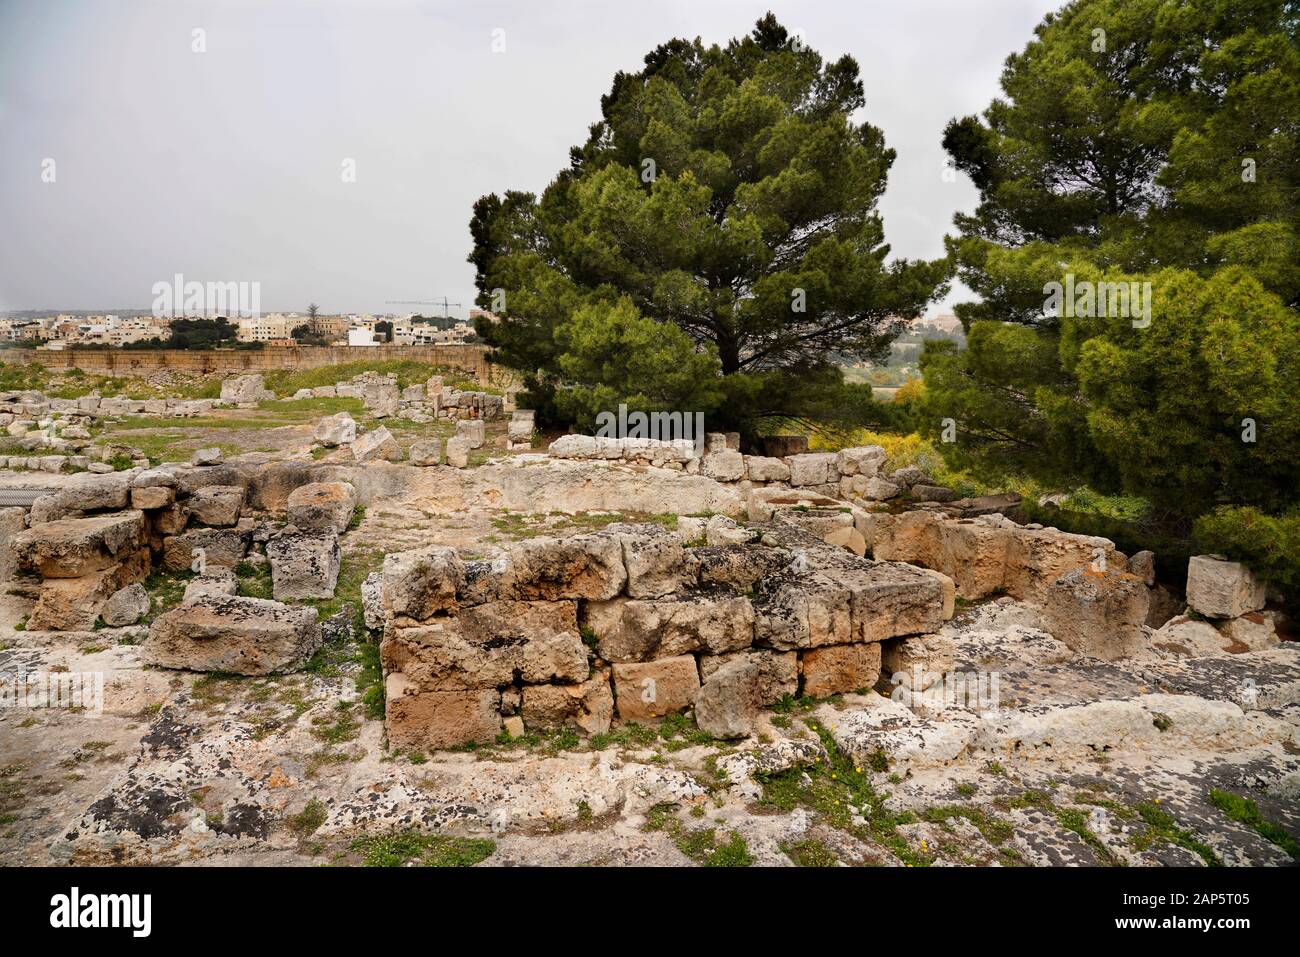 Domvs Romana ist ein RUINIERT der römischen Ära Haus auf der Grenze zwischen Mdina und Rabat, Malta Insel Stockfoto